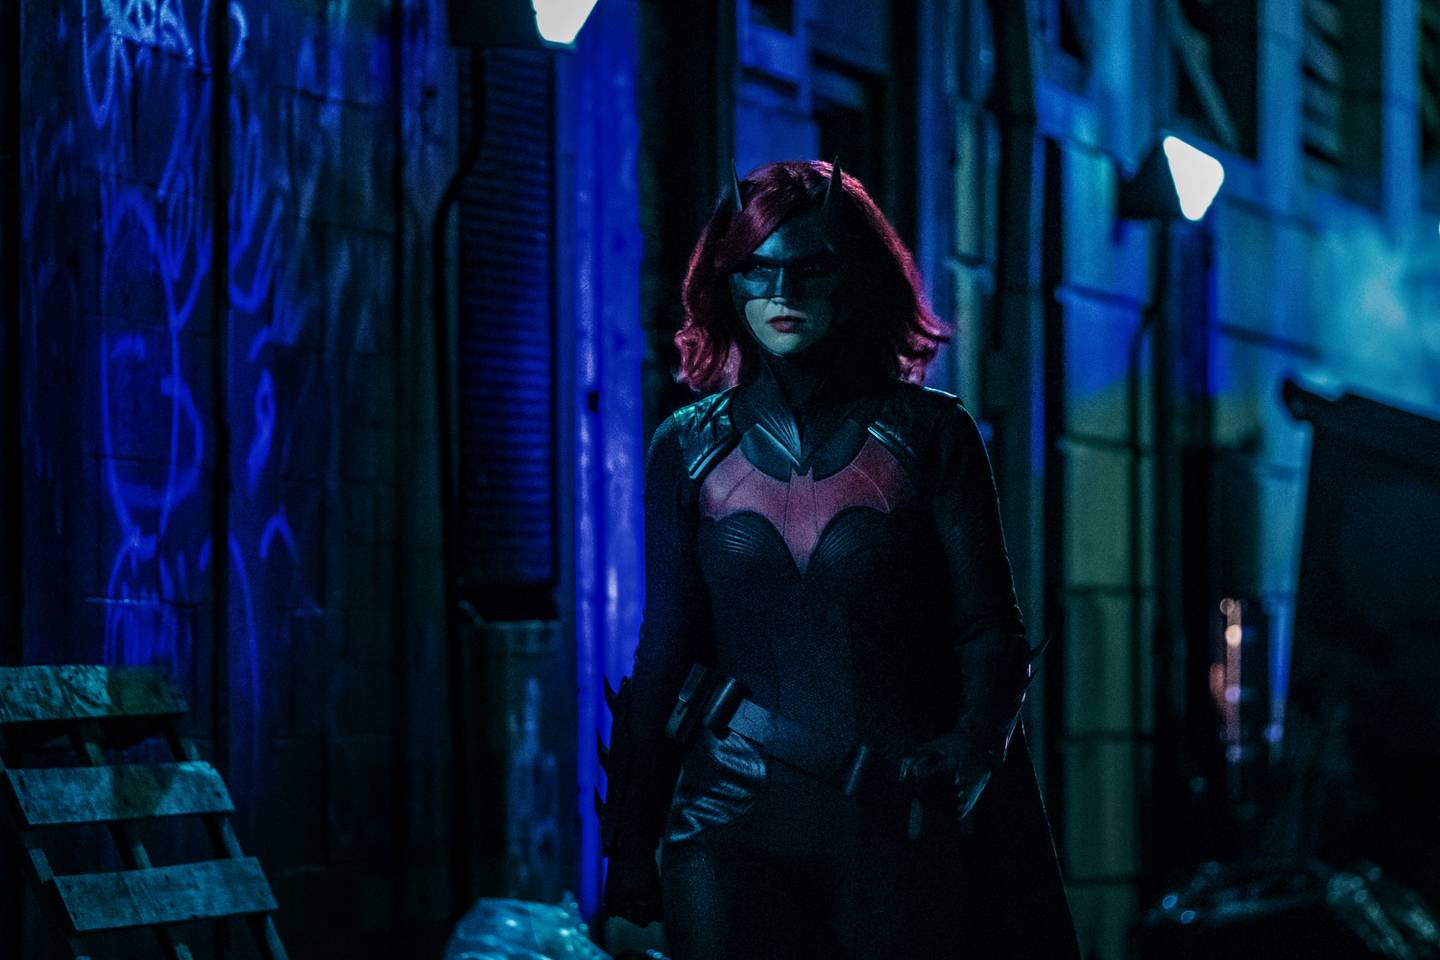 Serie 'Batwoman', protagonizada por Ruby Rose, quien interpreta a Kate Kane. Fotografía: HBO para La Nación